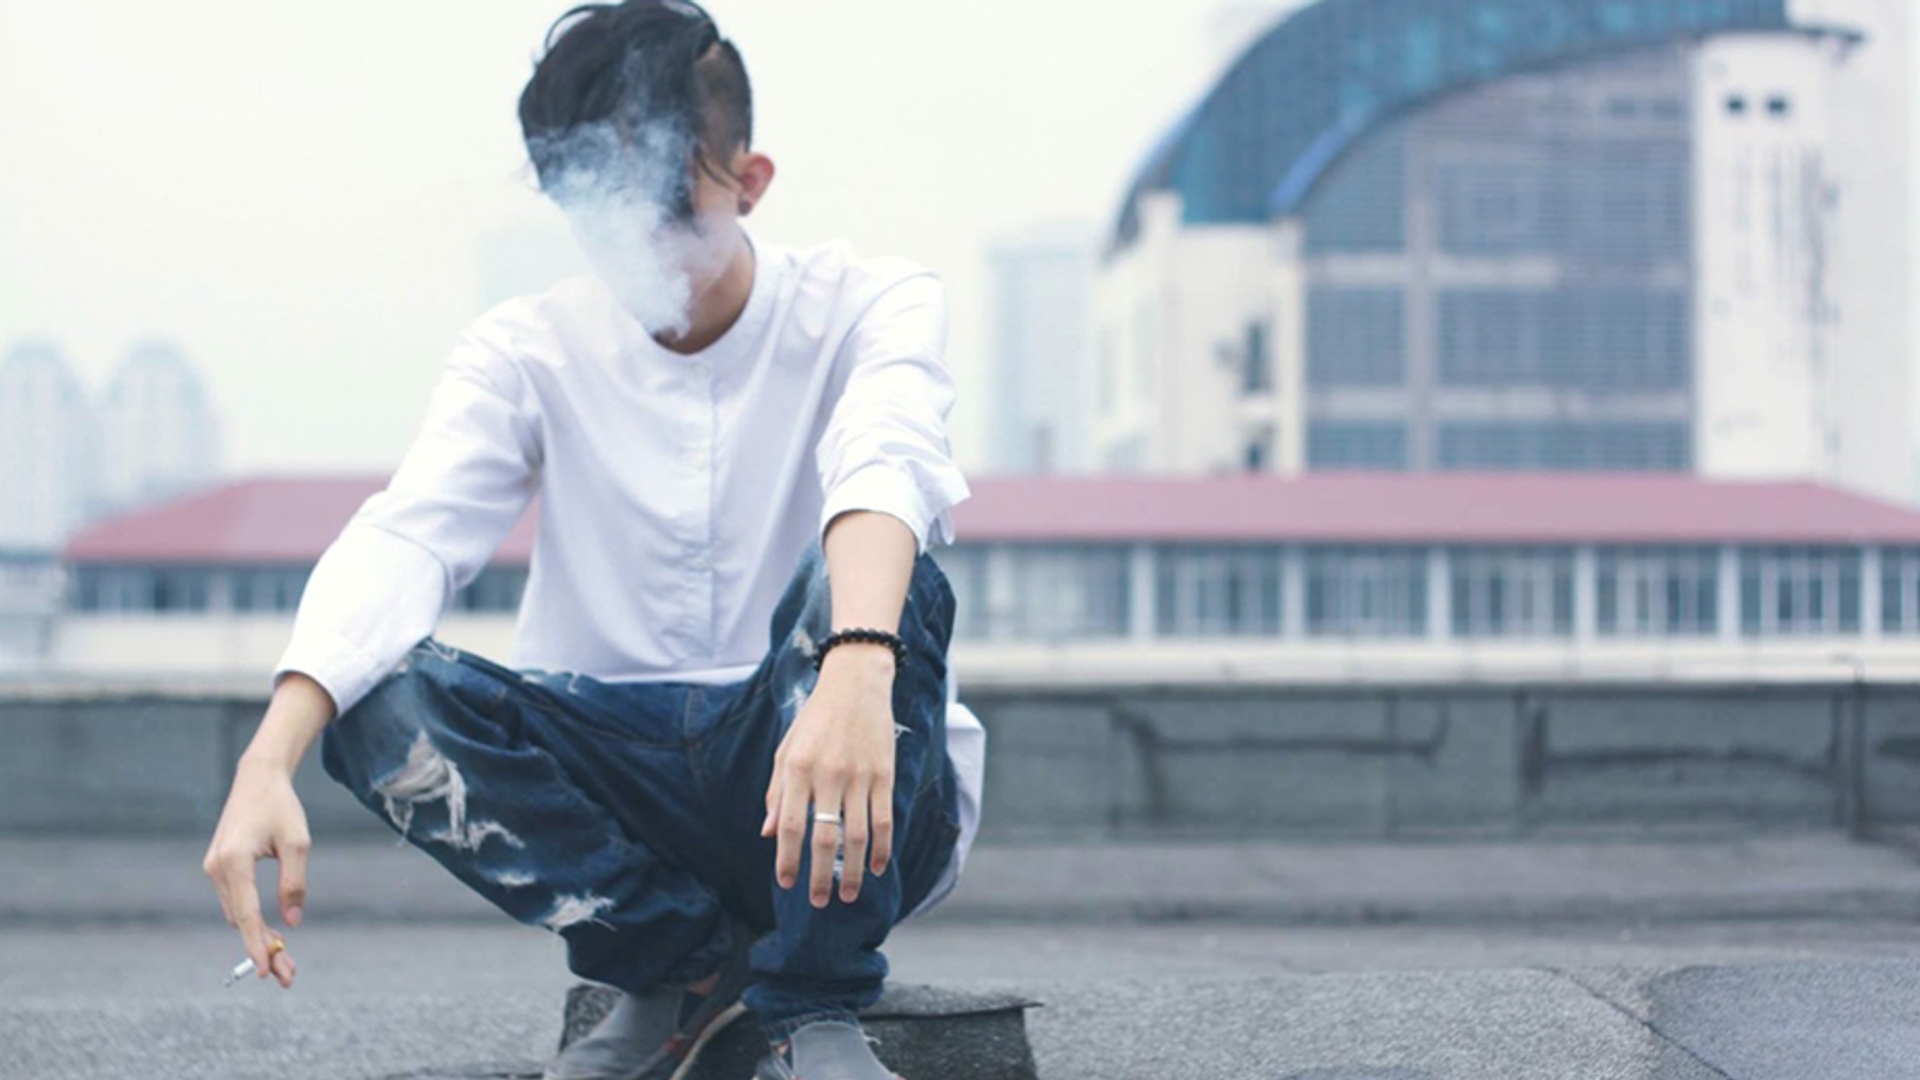 jongere jongen roken 930x520